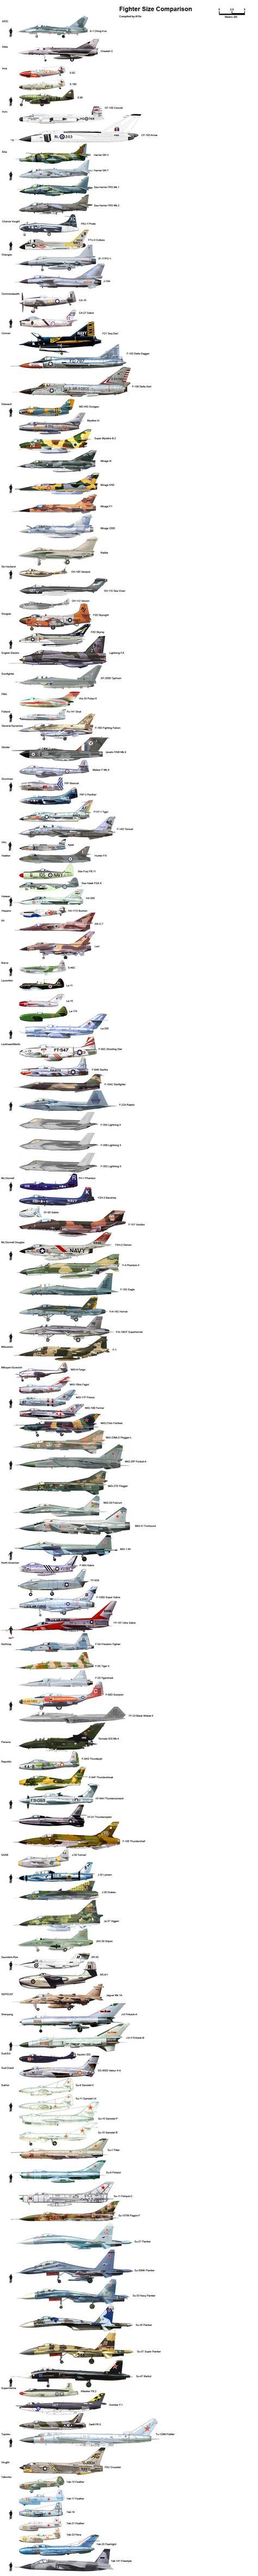 Comparatifs de la taille d'avions de chasse et d'hélicoptères - La boi...